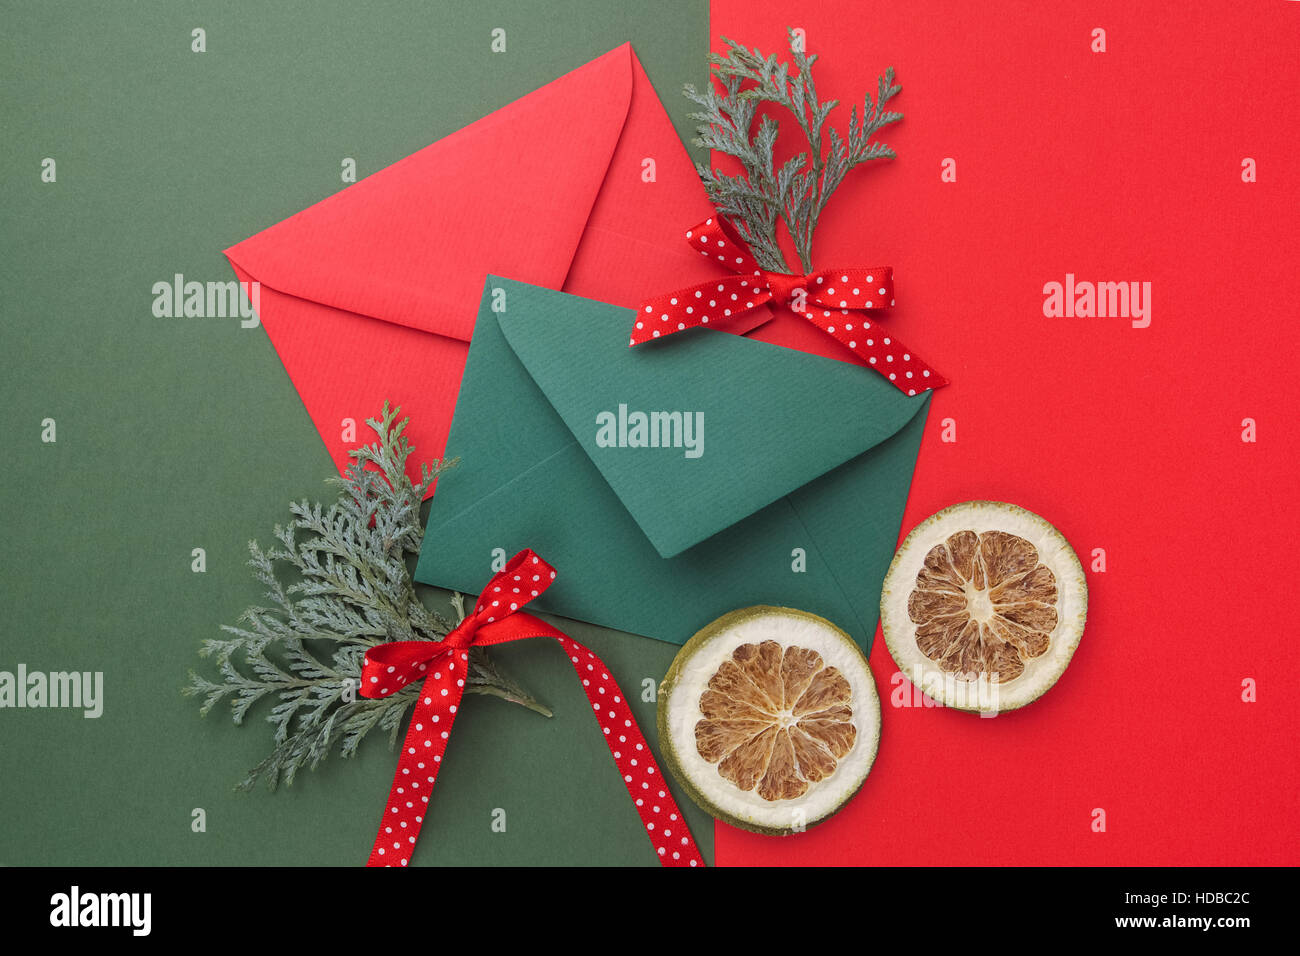 Enveloppes rouges et verts sur fond de vacances de Noël. Mise à plat. Banque D'Images